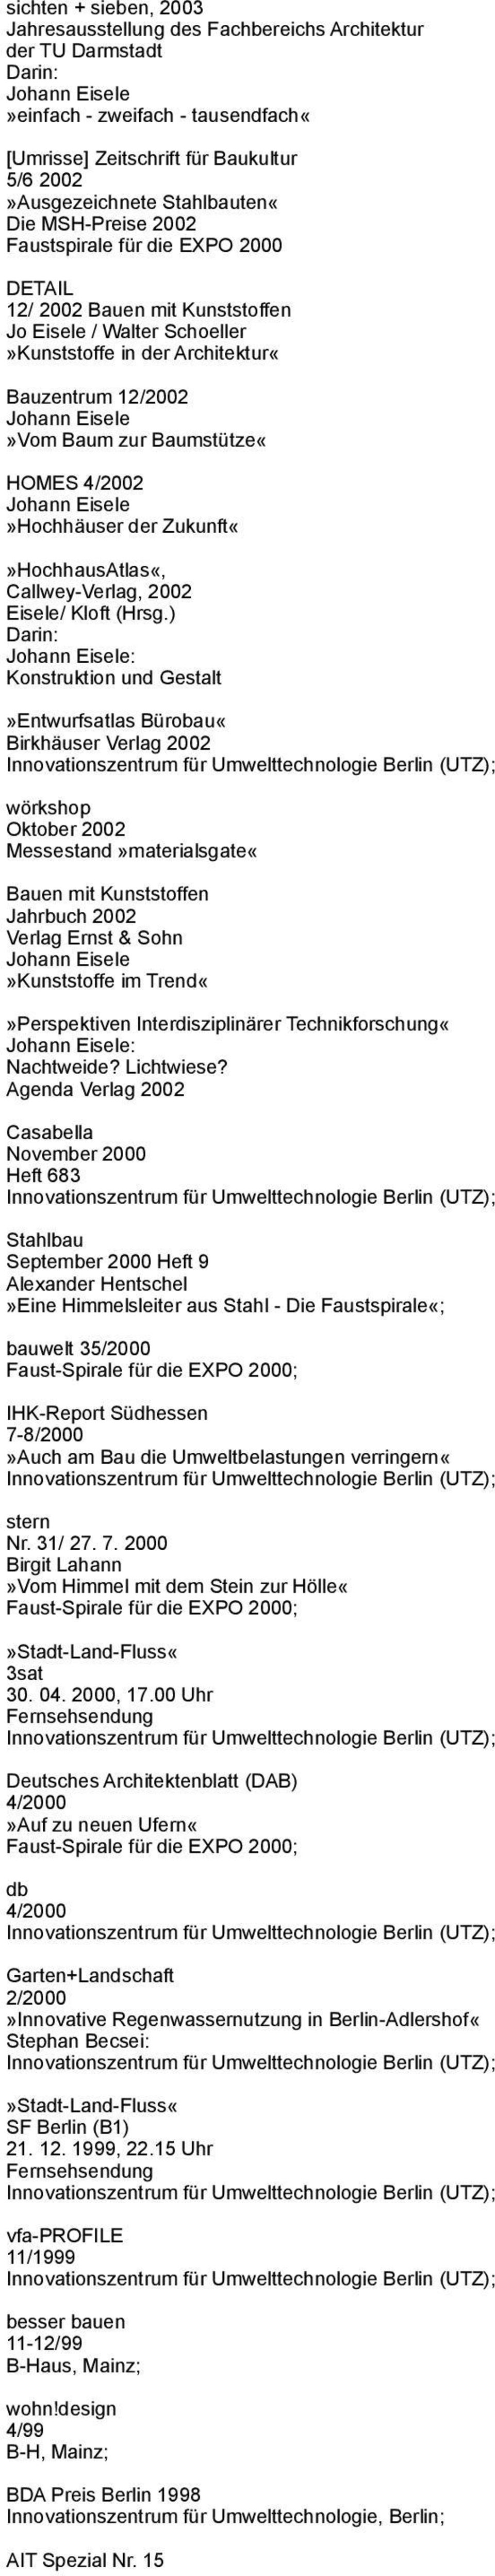 4/2002»Hochhäuser der ZukunftHochhausAtlas«, Callwey-Verlag, 2002 Eisele/ Kloft (Hrsg.